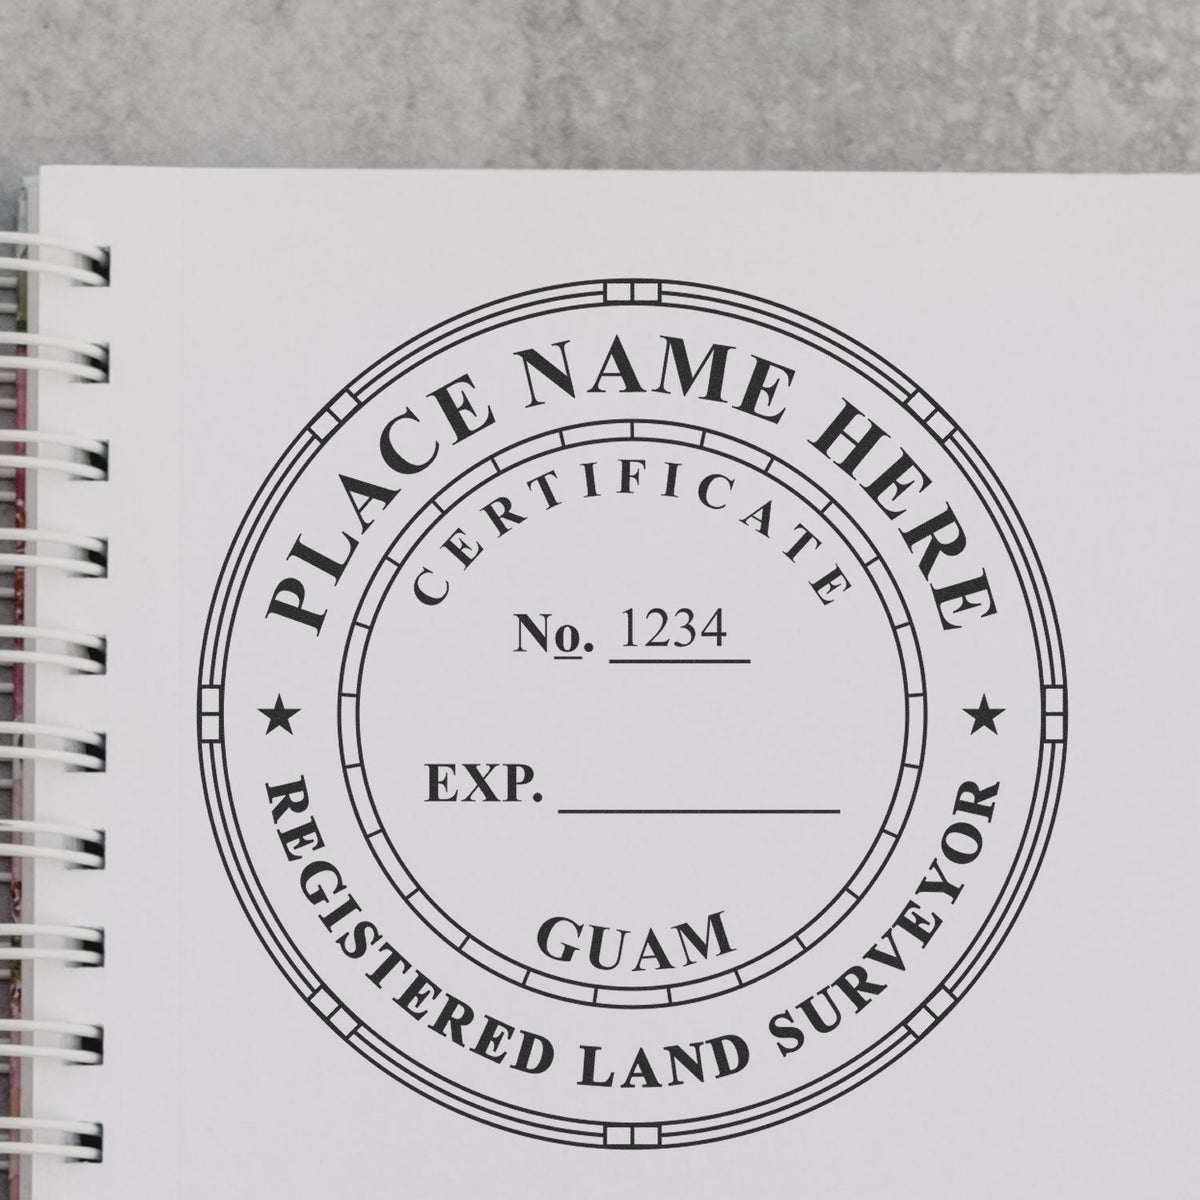 Guam Land Surveyor Seal Stamp In Use Photo